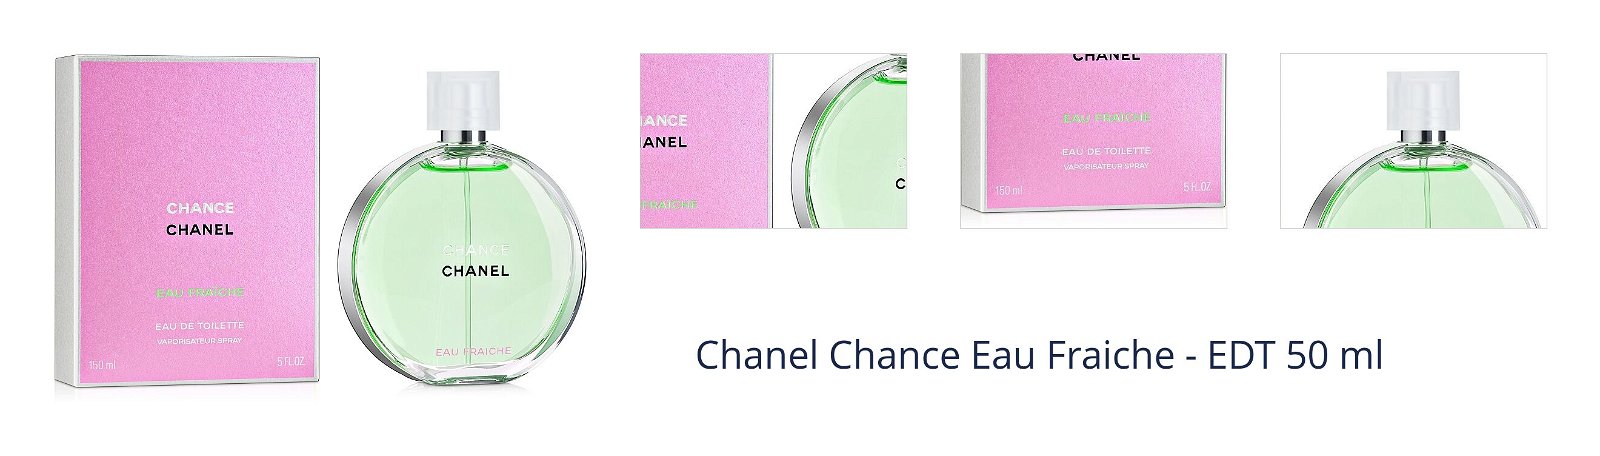 Chanel Chance Eau Fraiche - EDT 50 ml 1